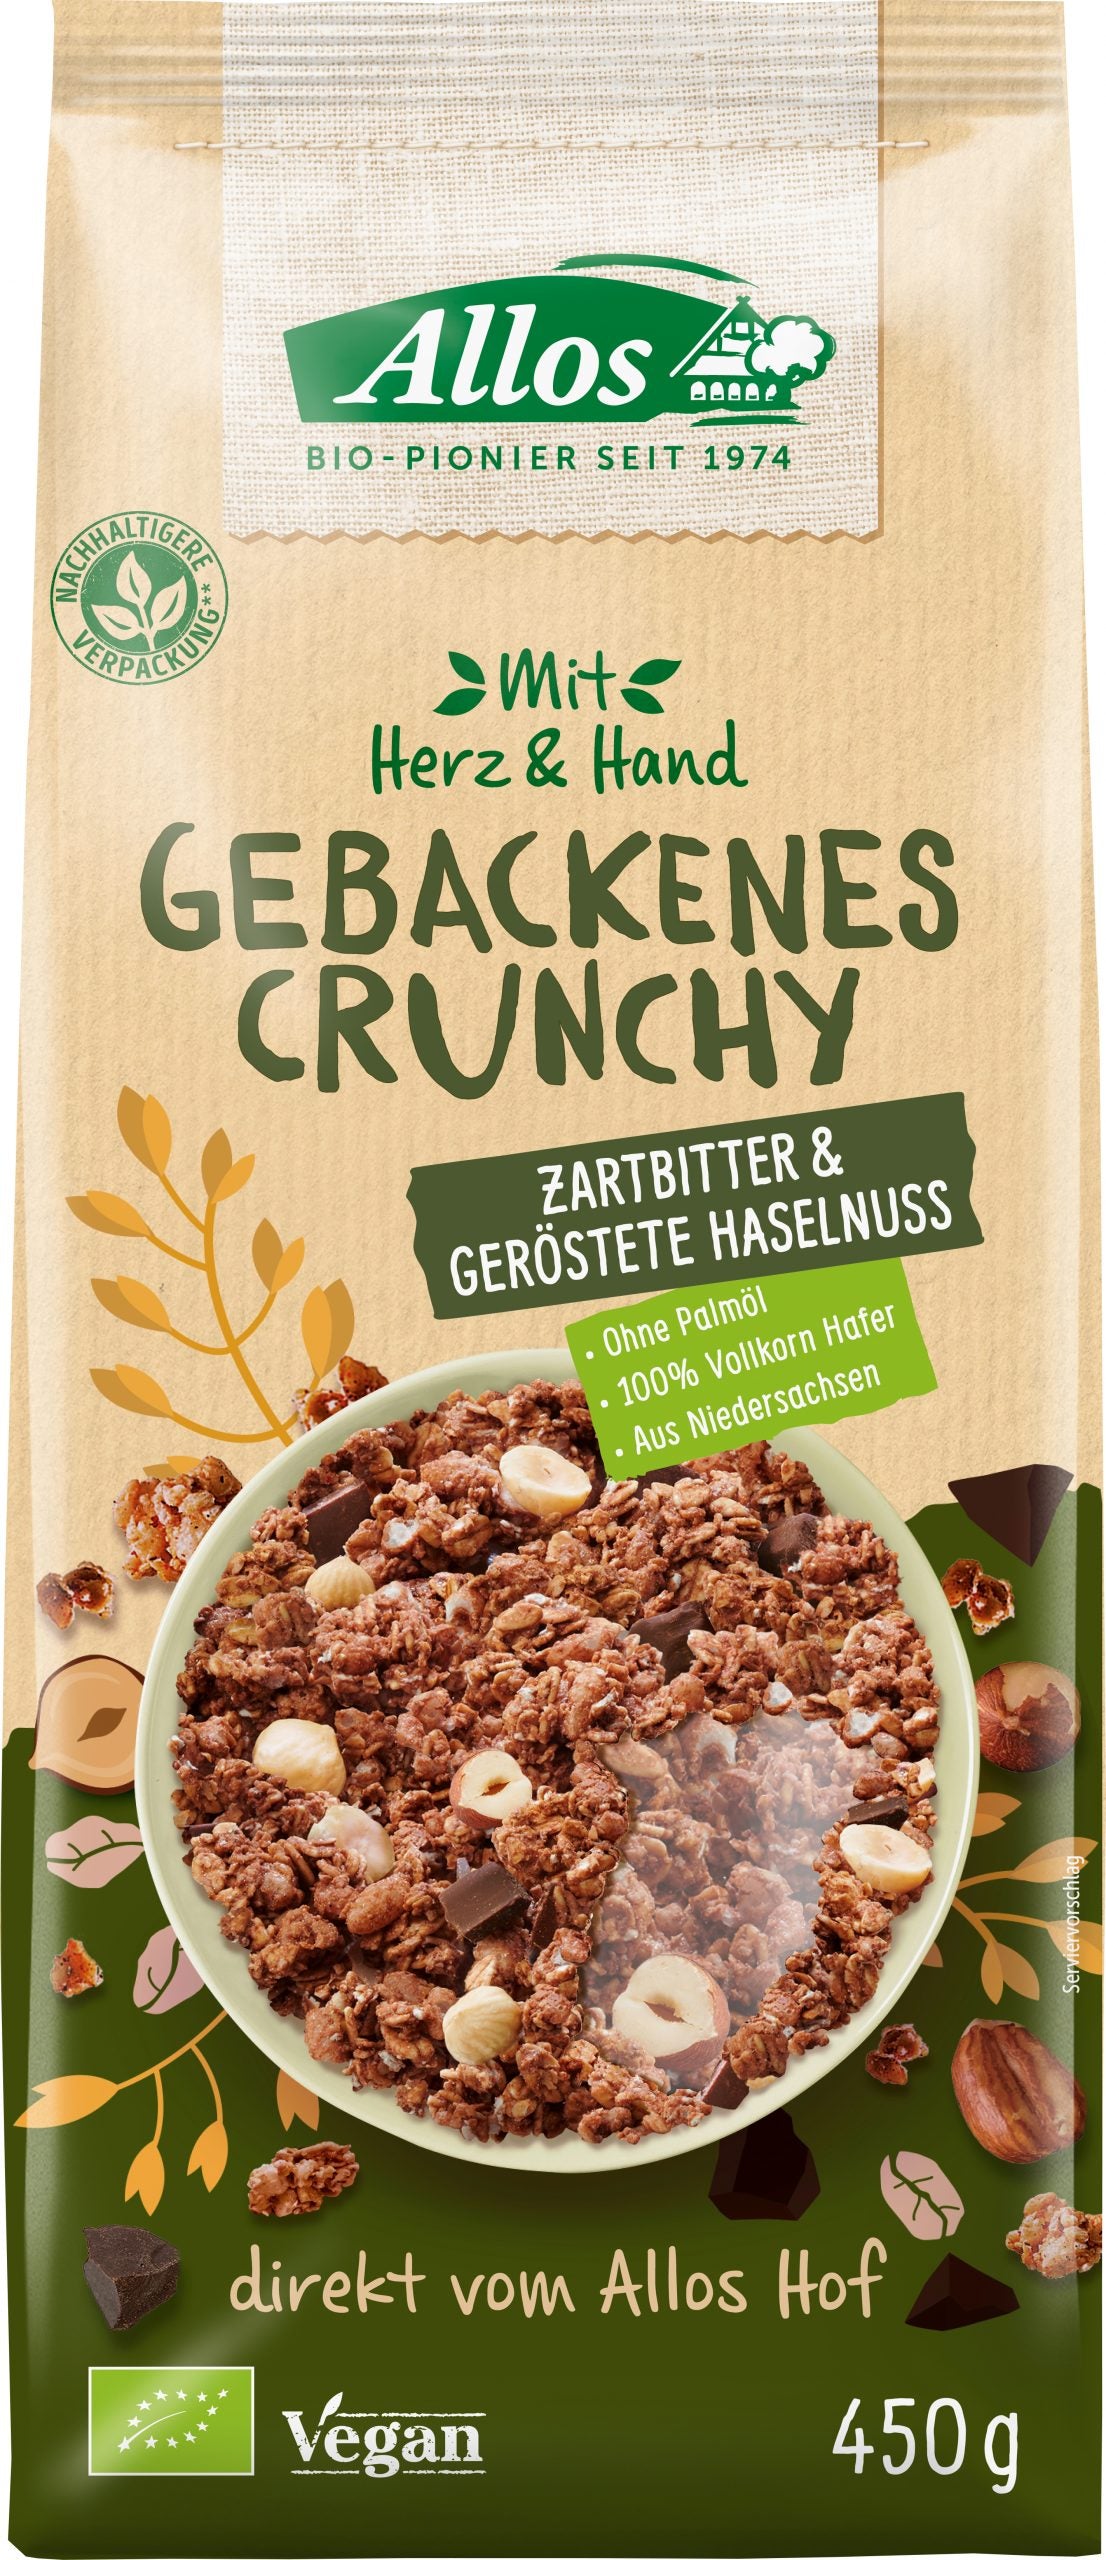 Allos Mit Herz & Hand Gebackenes Crunchy Zartbitter & Geröstete Haselnuss